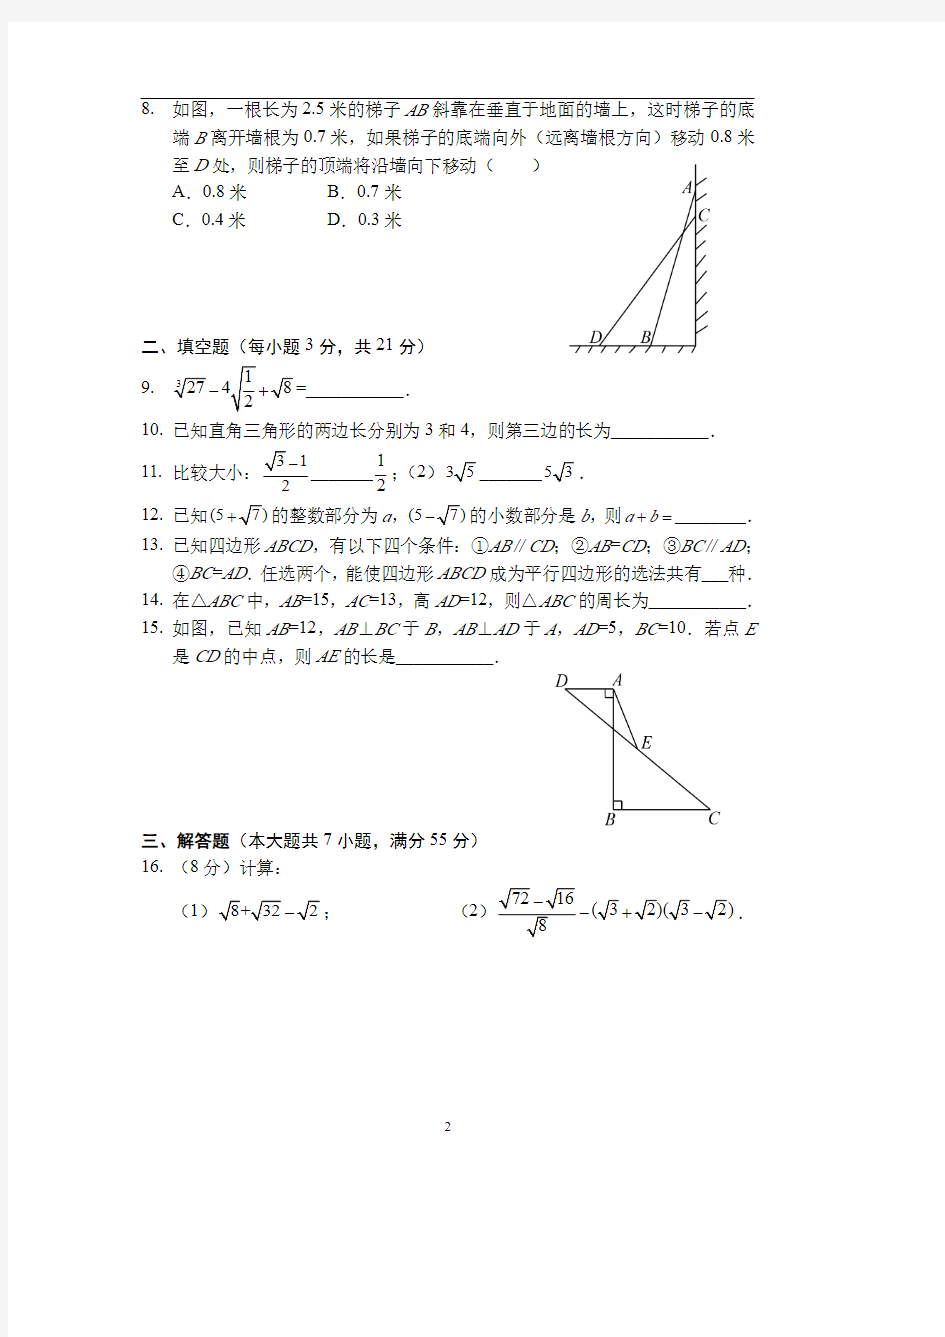 八年级下学期开学测试数学模拟试卷 答案(人教版) 答案(A4版)